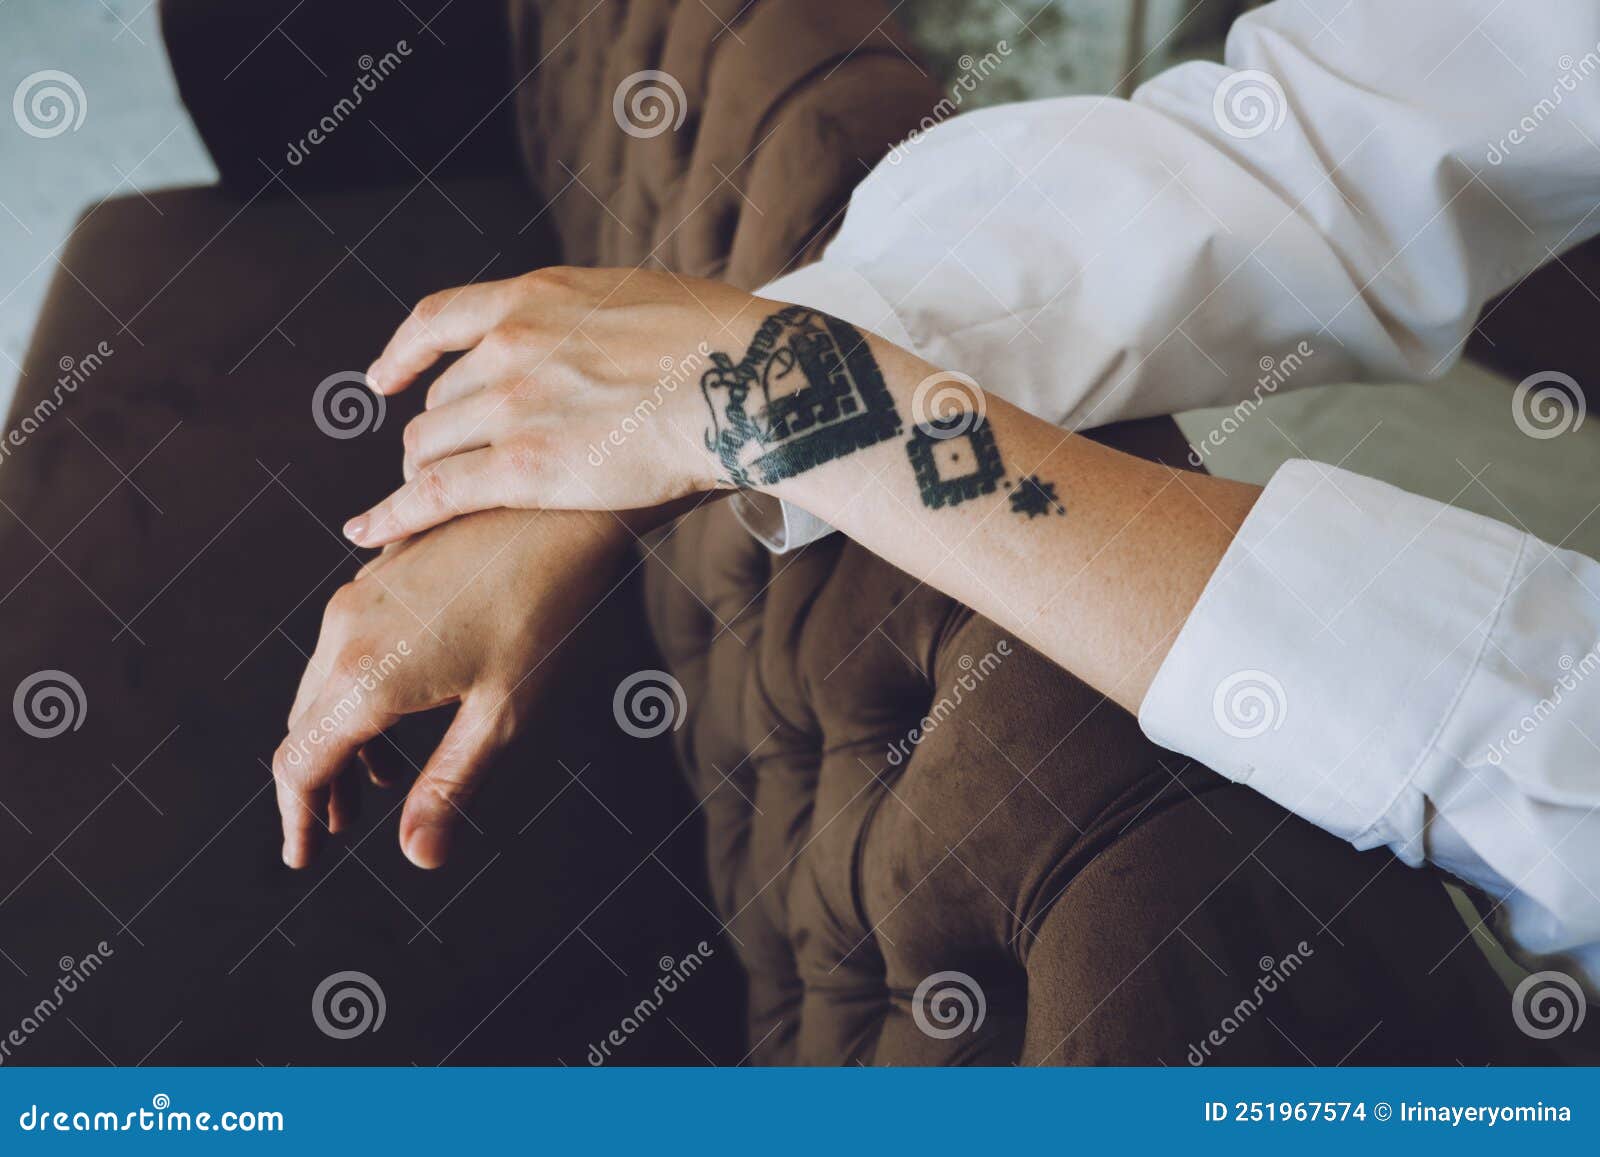 HD wallpaper: woman wearing ring, woman taking selfie, female, tattoo, hand  | Wallpaper Flare